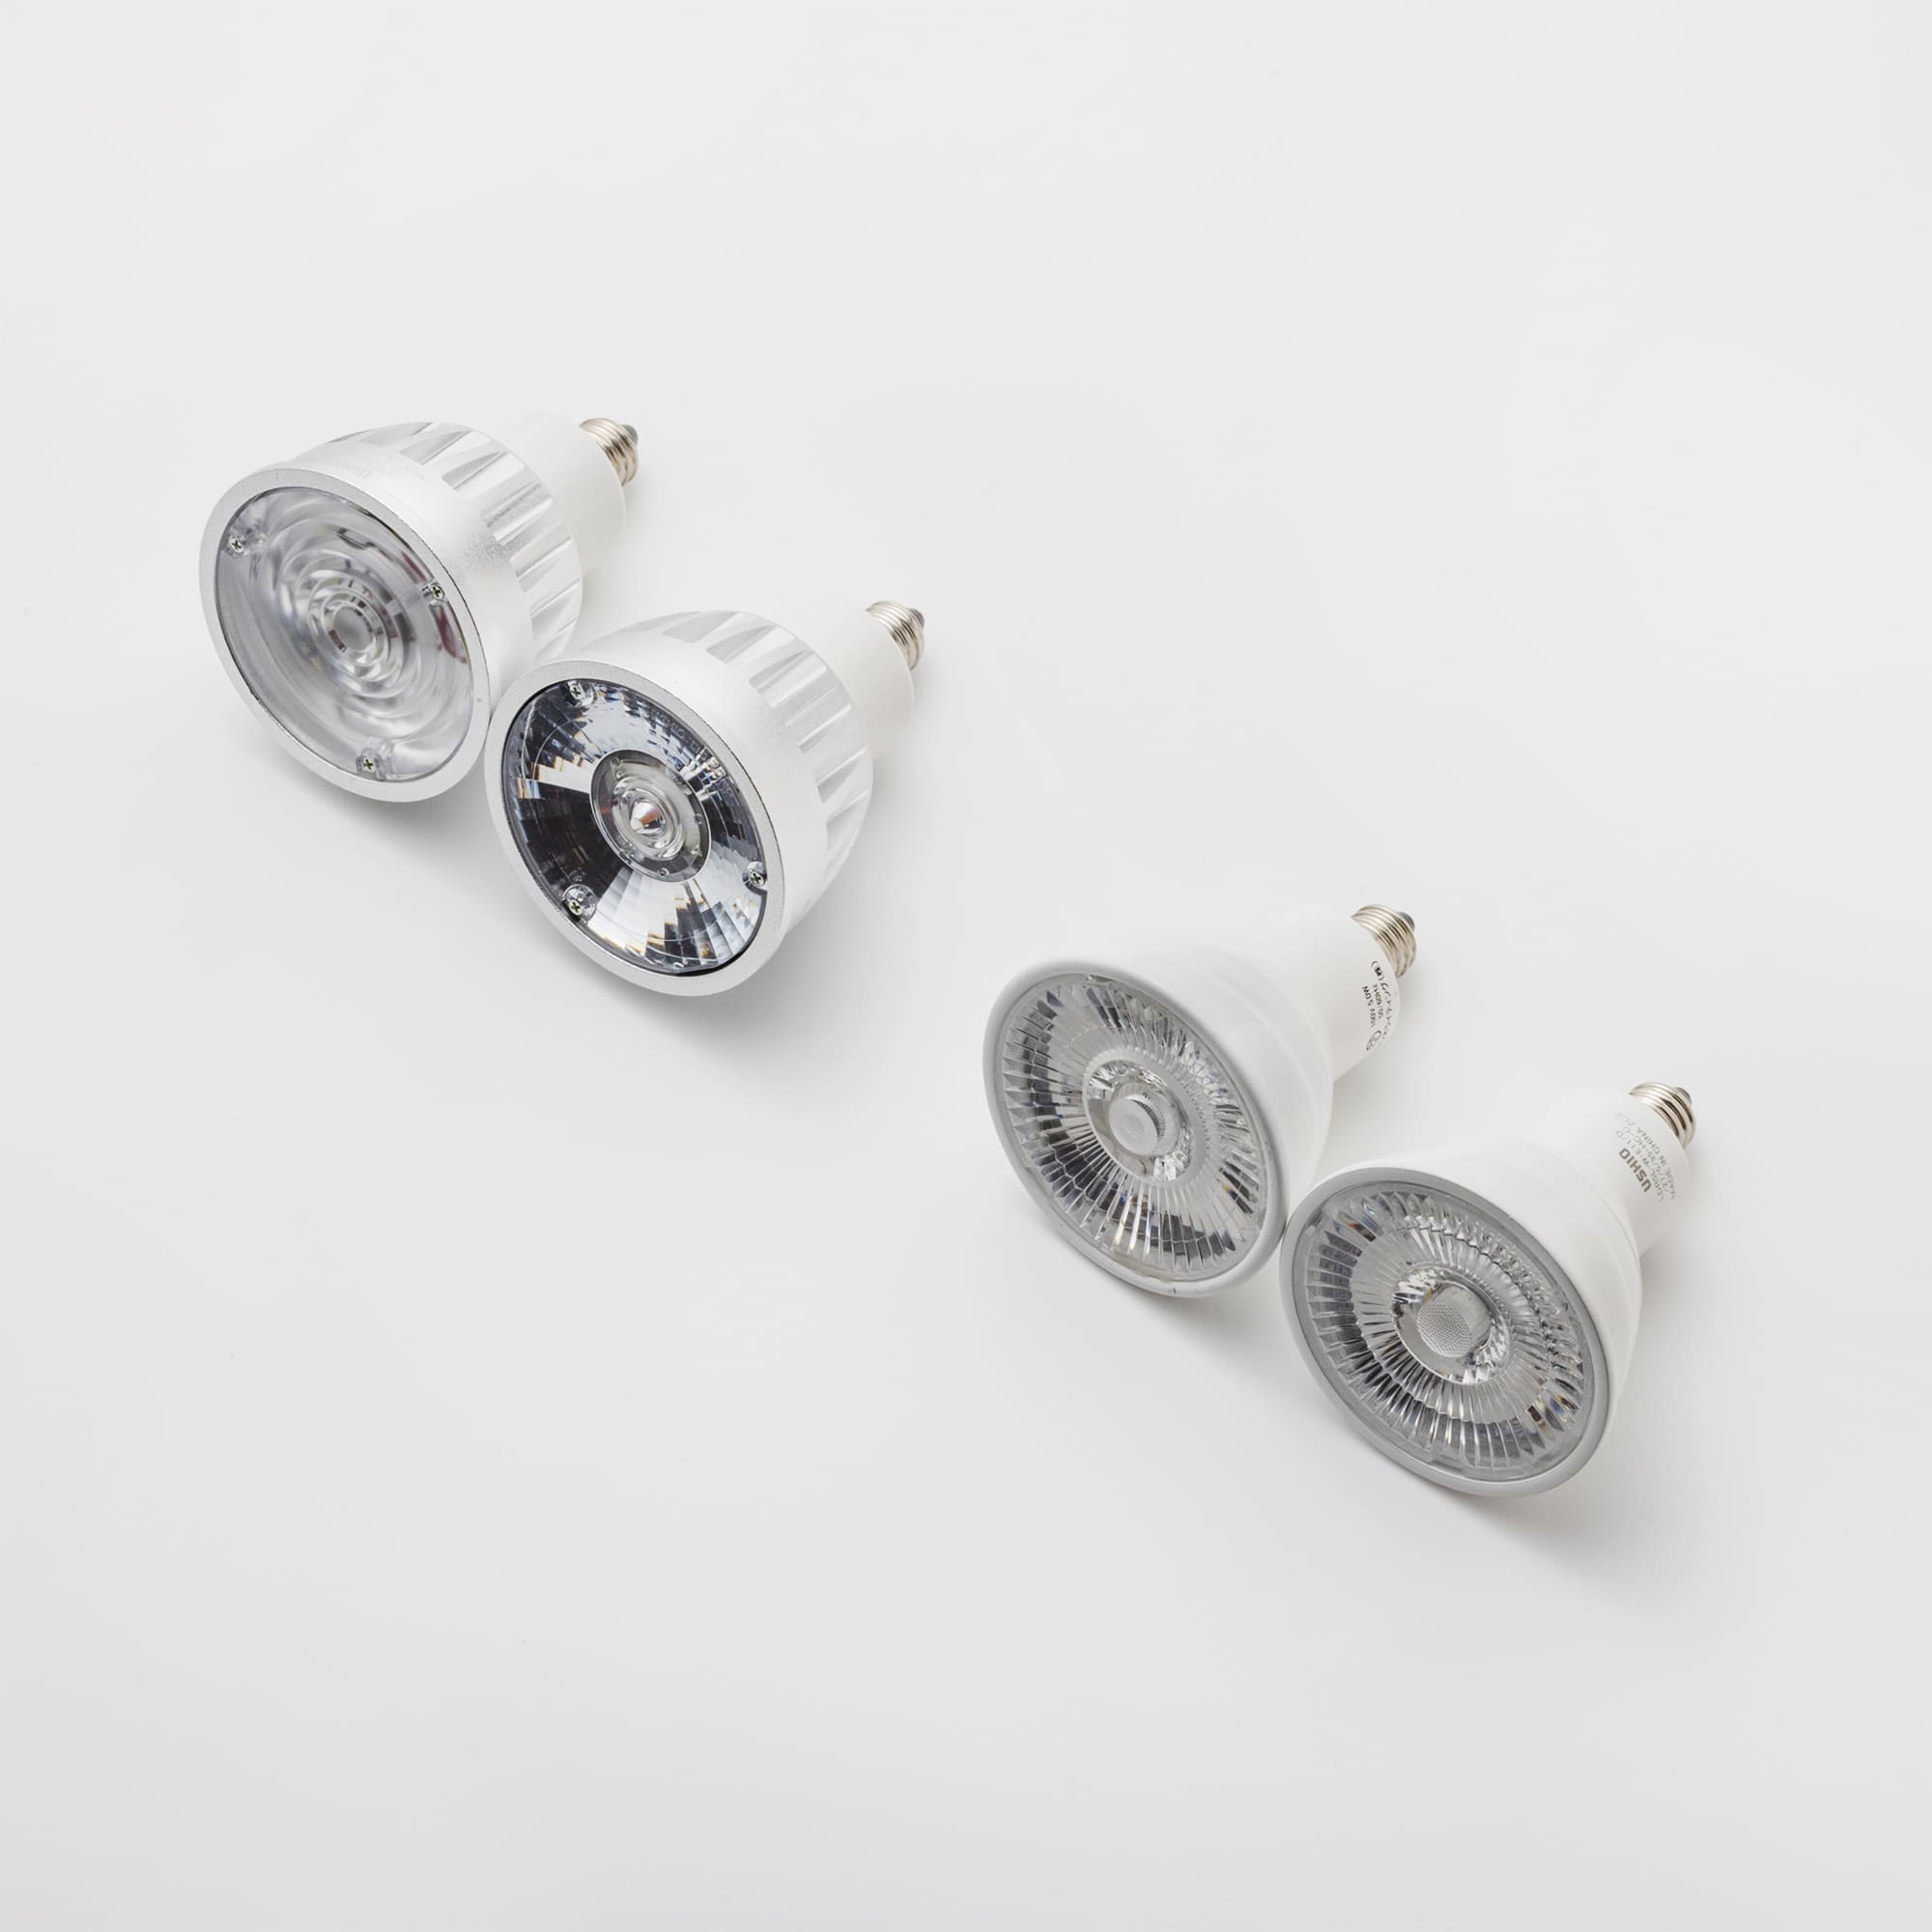 シーリングスポット ホワイト LT-BR017-02-G141 付属電球は4種類から選べます（左から65W広角・65W狭角・40W広角・40W狭角）